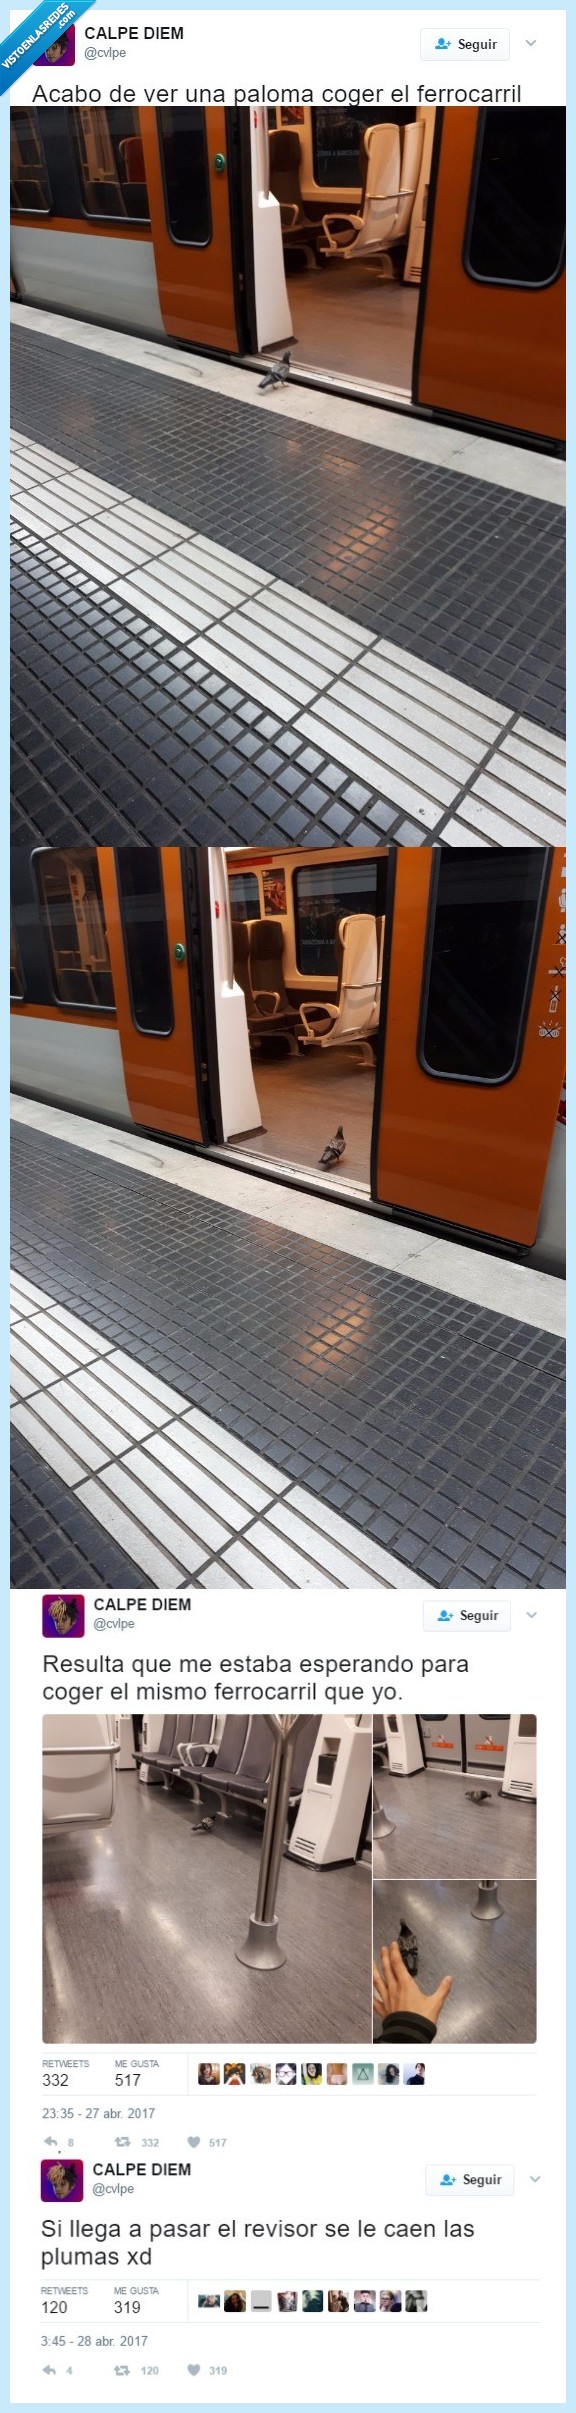 465514 - ¿Una paloma subiéndose en el tren? SÍ, es ella y se ha hecho famosa en todo internet, por @cvlpe